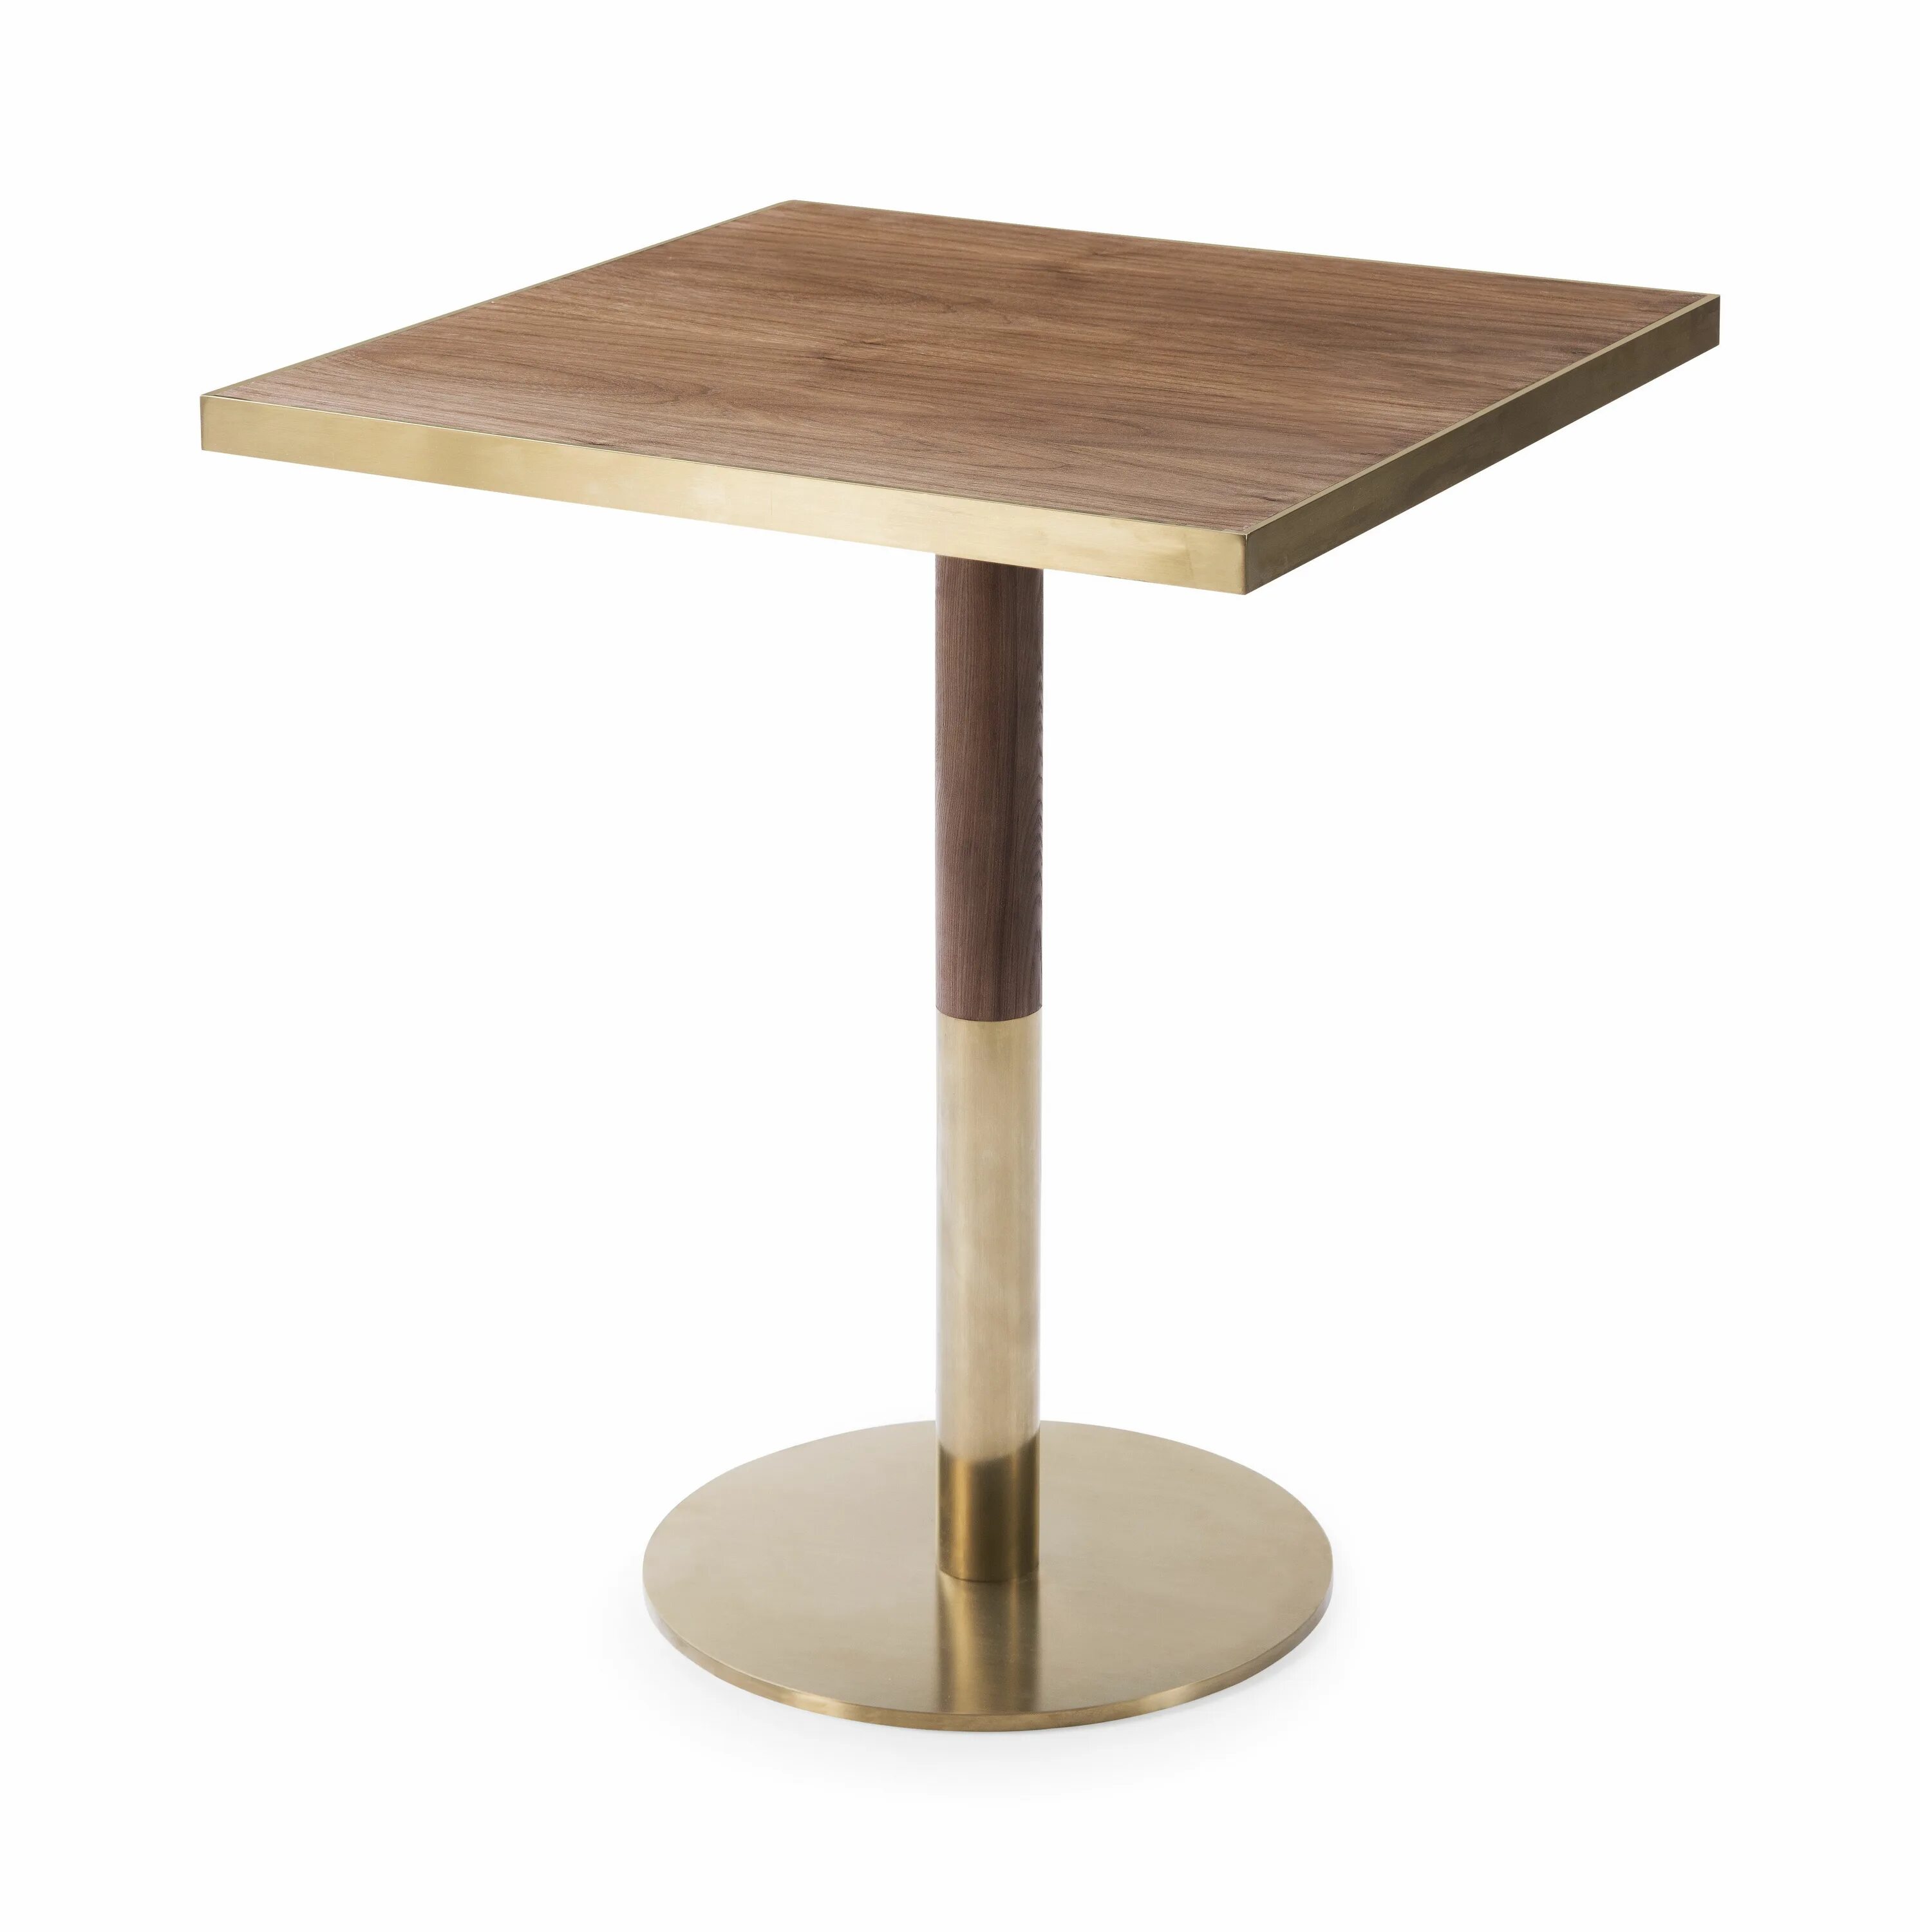 Round cafe. Стол с квадратными ножками. Стол квадратный деревянный. Стол для кафе квадратный. Стол квадратный на одной ножке.